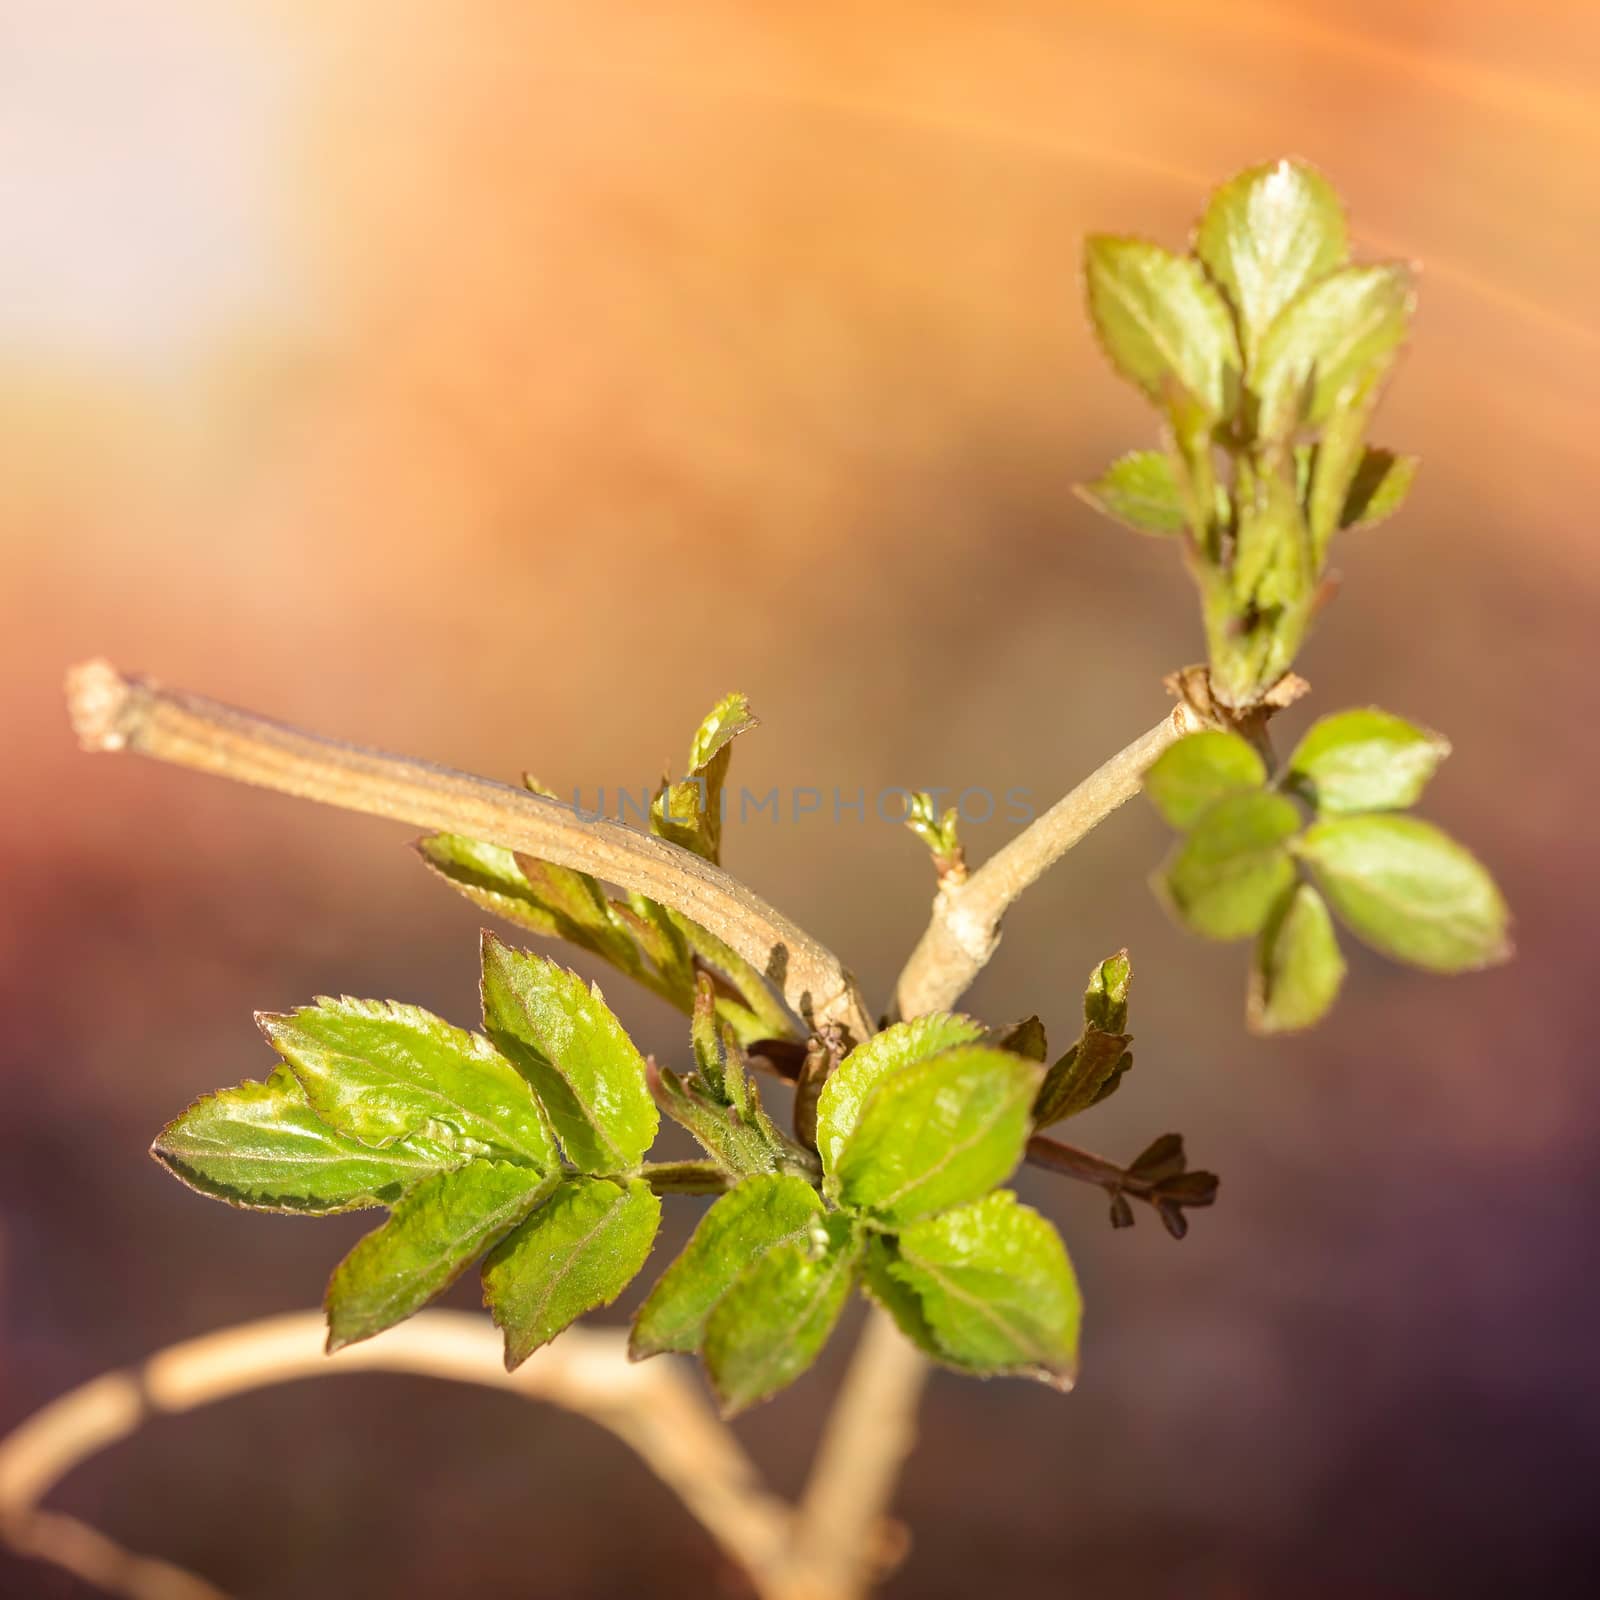 Little Tender Spring Leaves by MaxalTamor